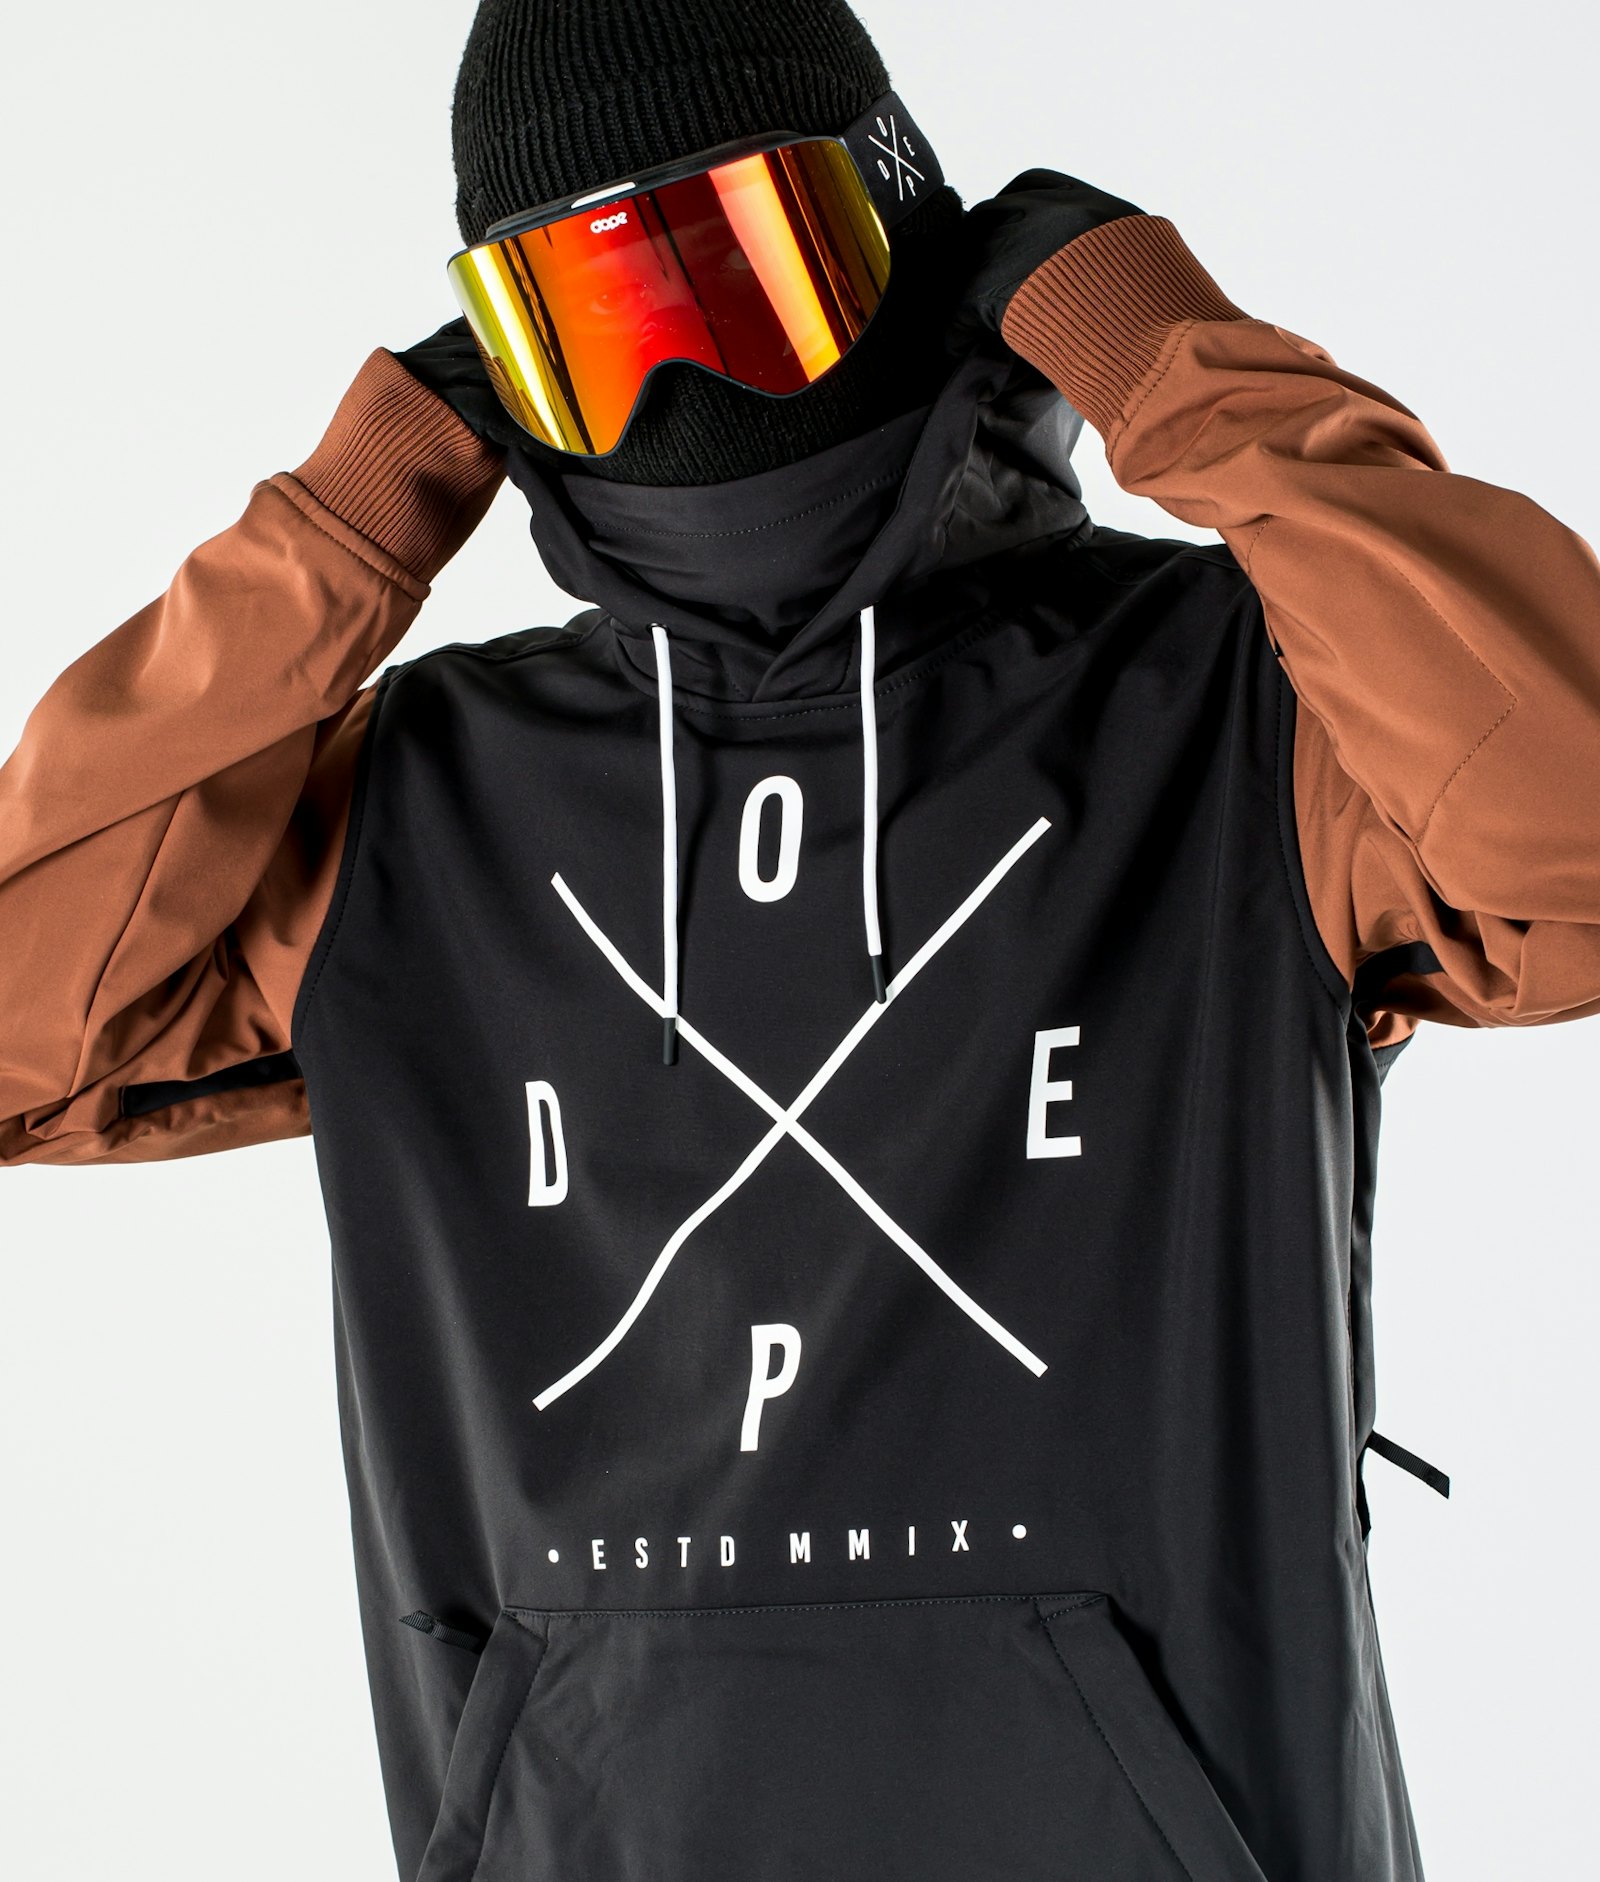 Yeti 10k Ski Jacket Men Black/Adobe